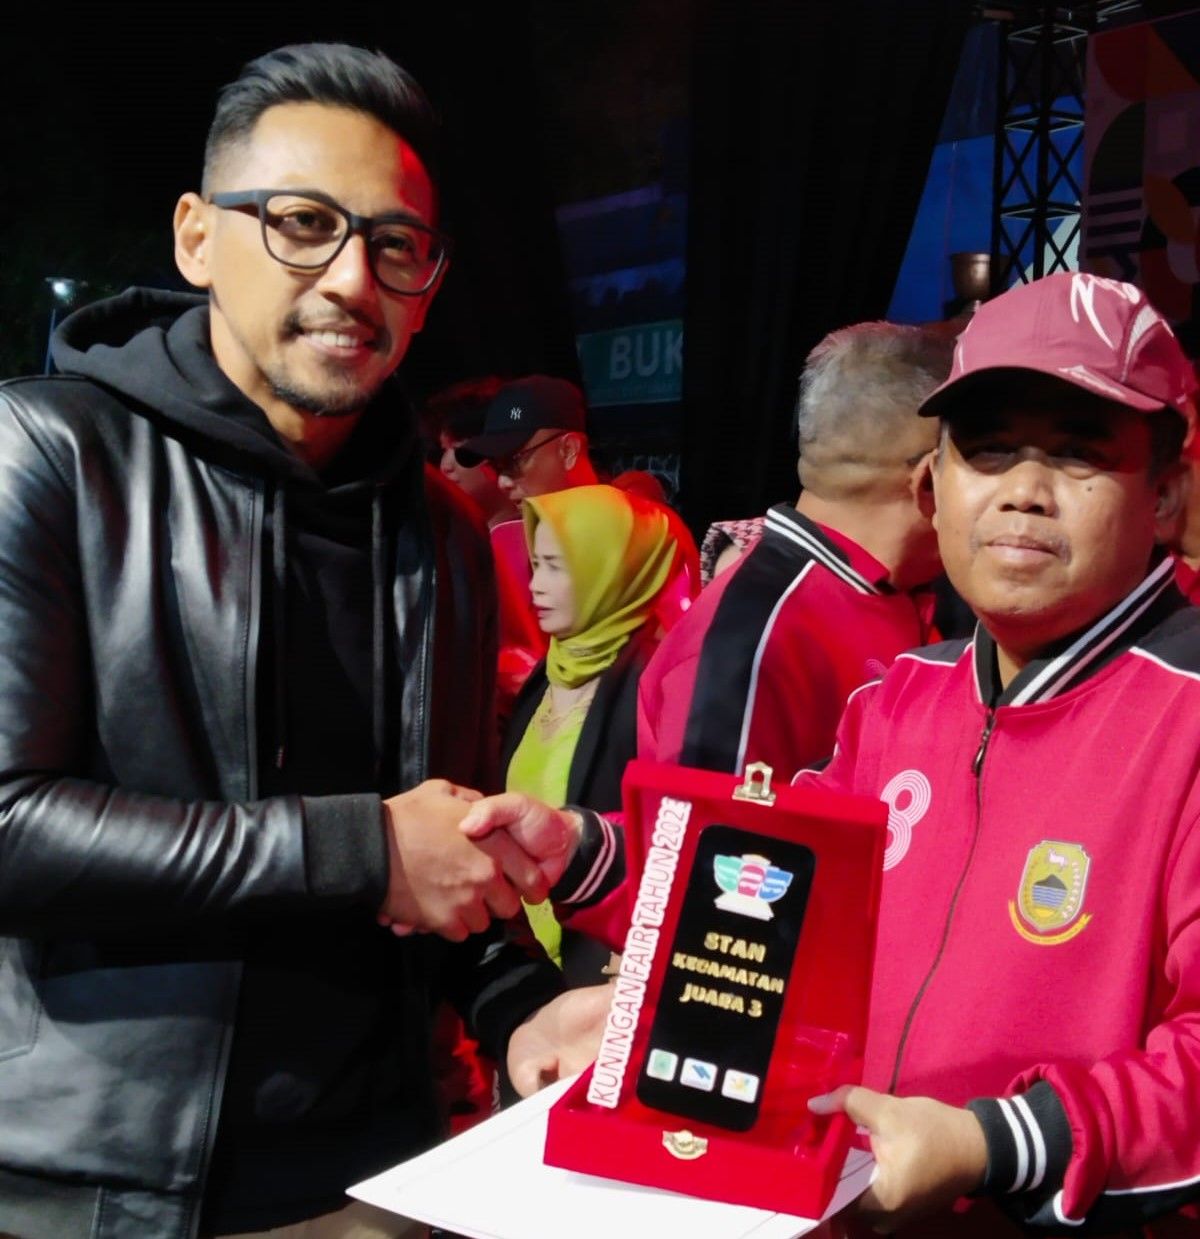 Camat Garawangi menerima tropi sebagai juara ke-3 Stand Pameran Pembangunan terbaik.